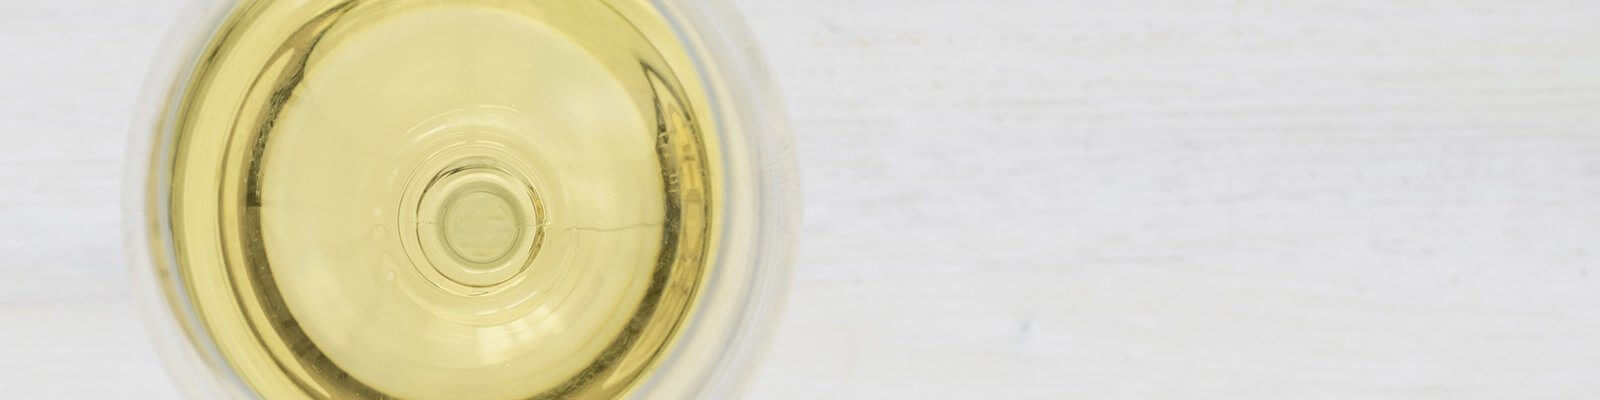 Notre collection de Vins Blancs - Découvrez-la chez Onshore Cellars, votre fournisseur de vins de plaisance.